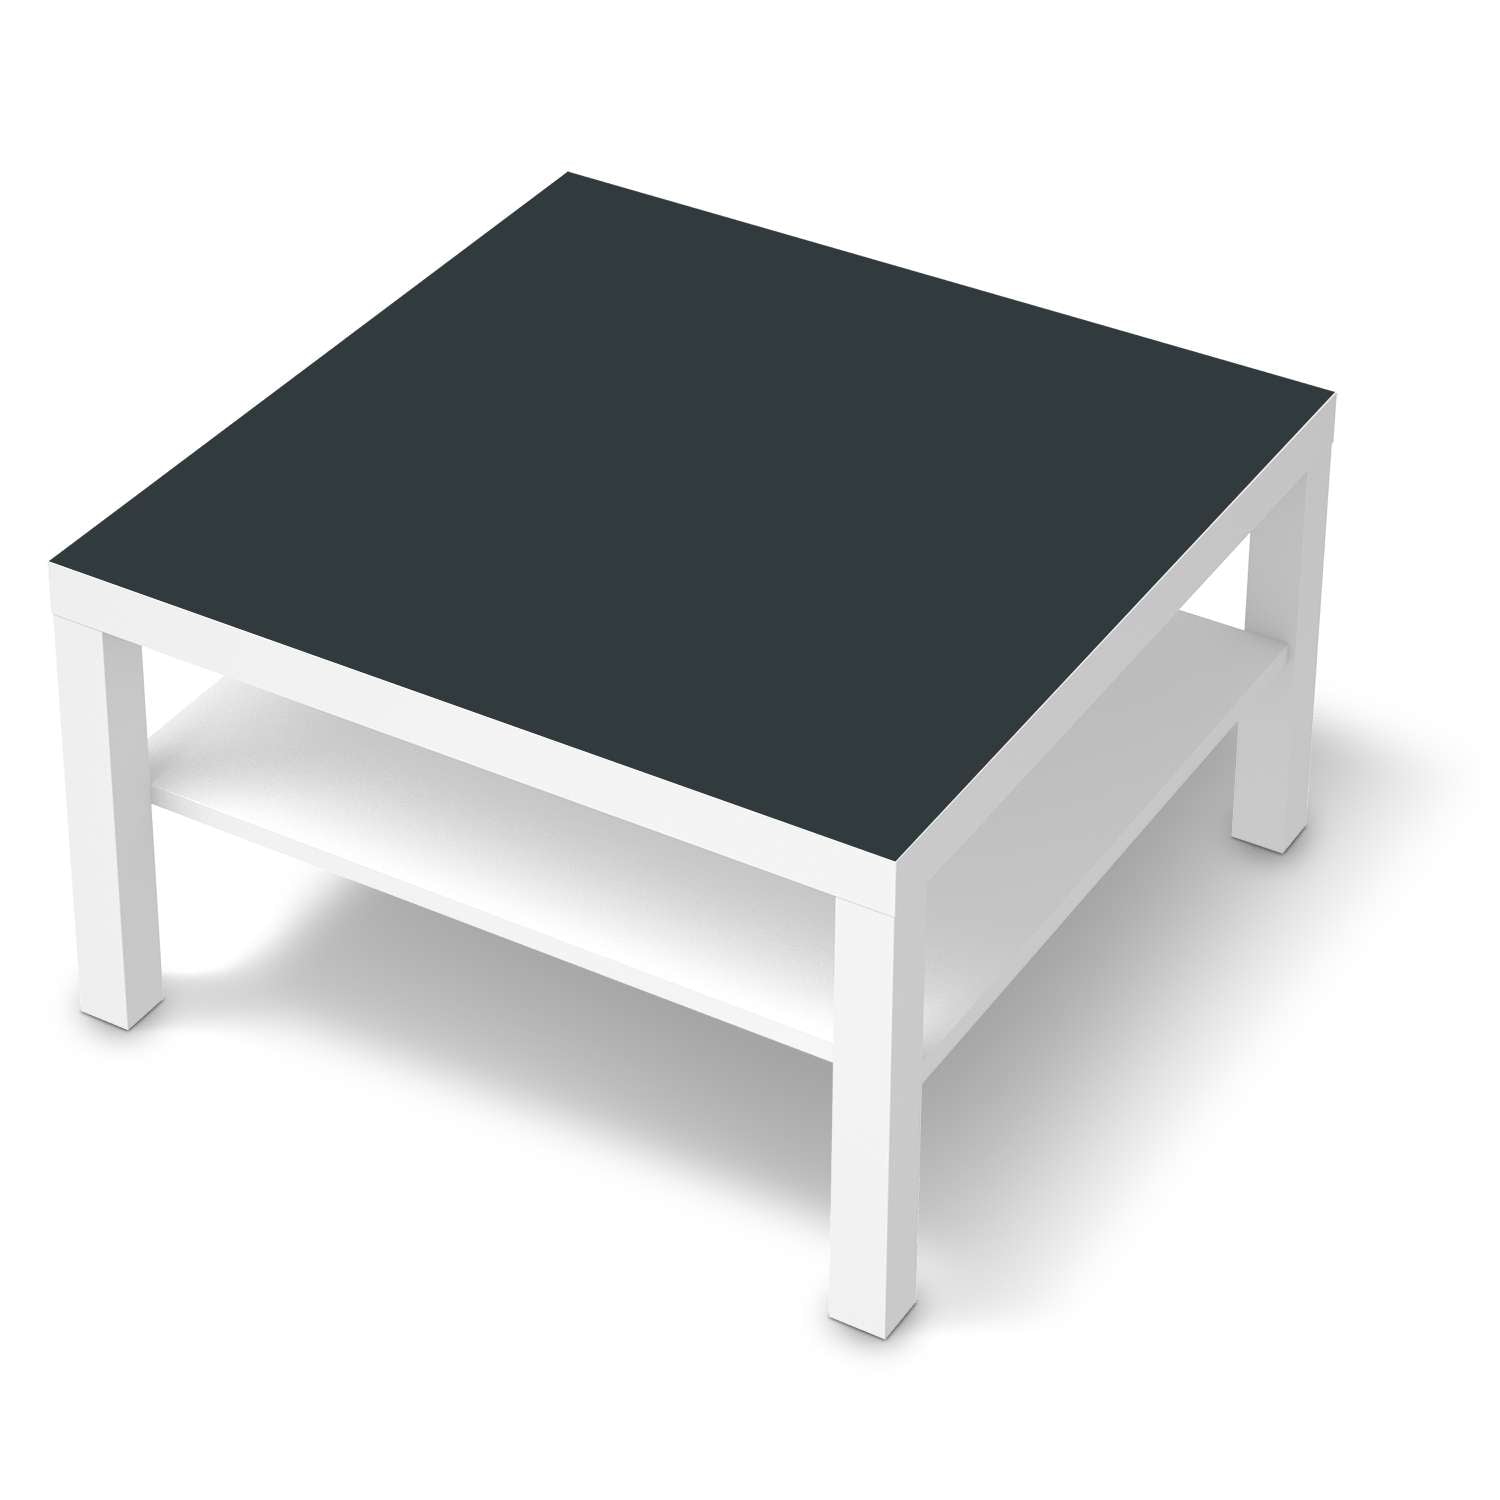 Selbstklebende Folie IKEA Lack Tisch 78x78 cm - Design: Blaugrau Dark von creatisto